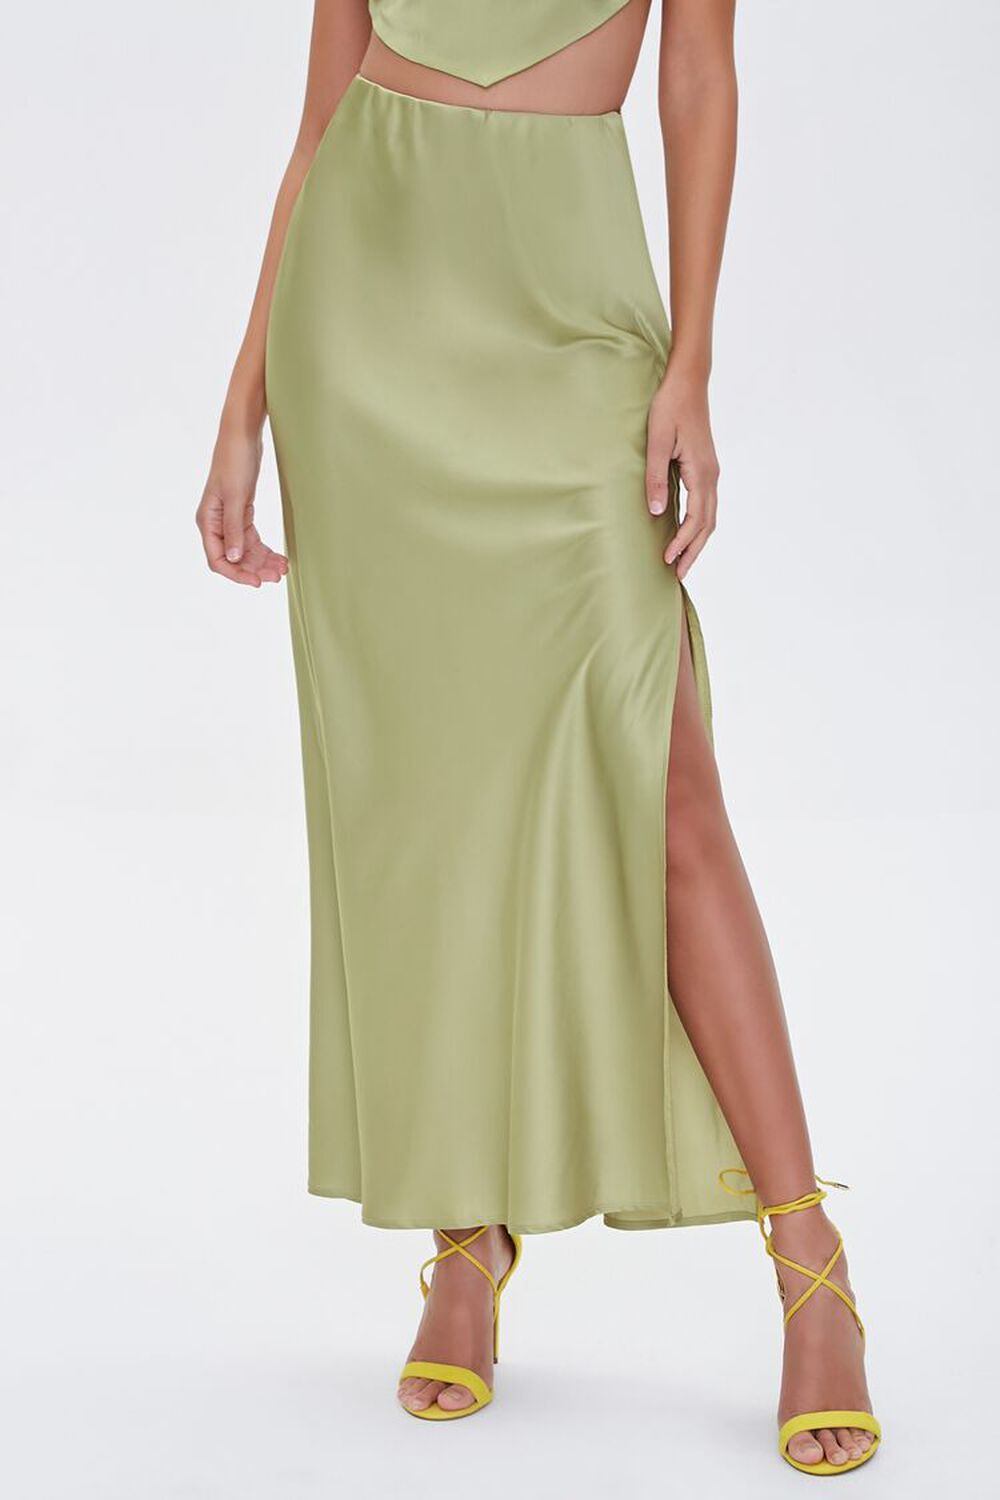 GREEN Satin Maxi Skirt, image 2